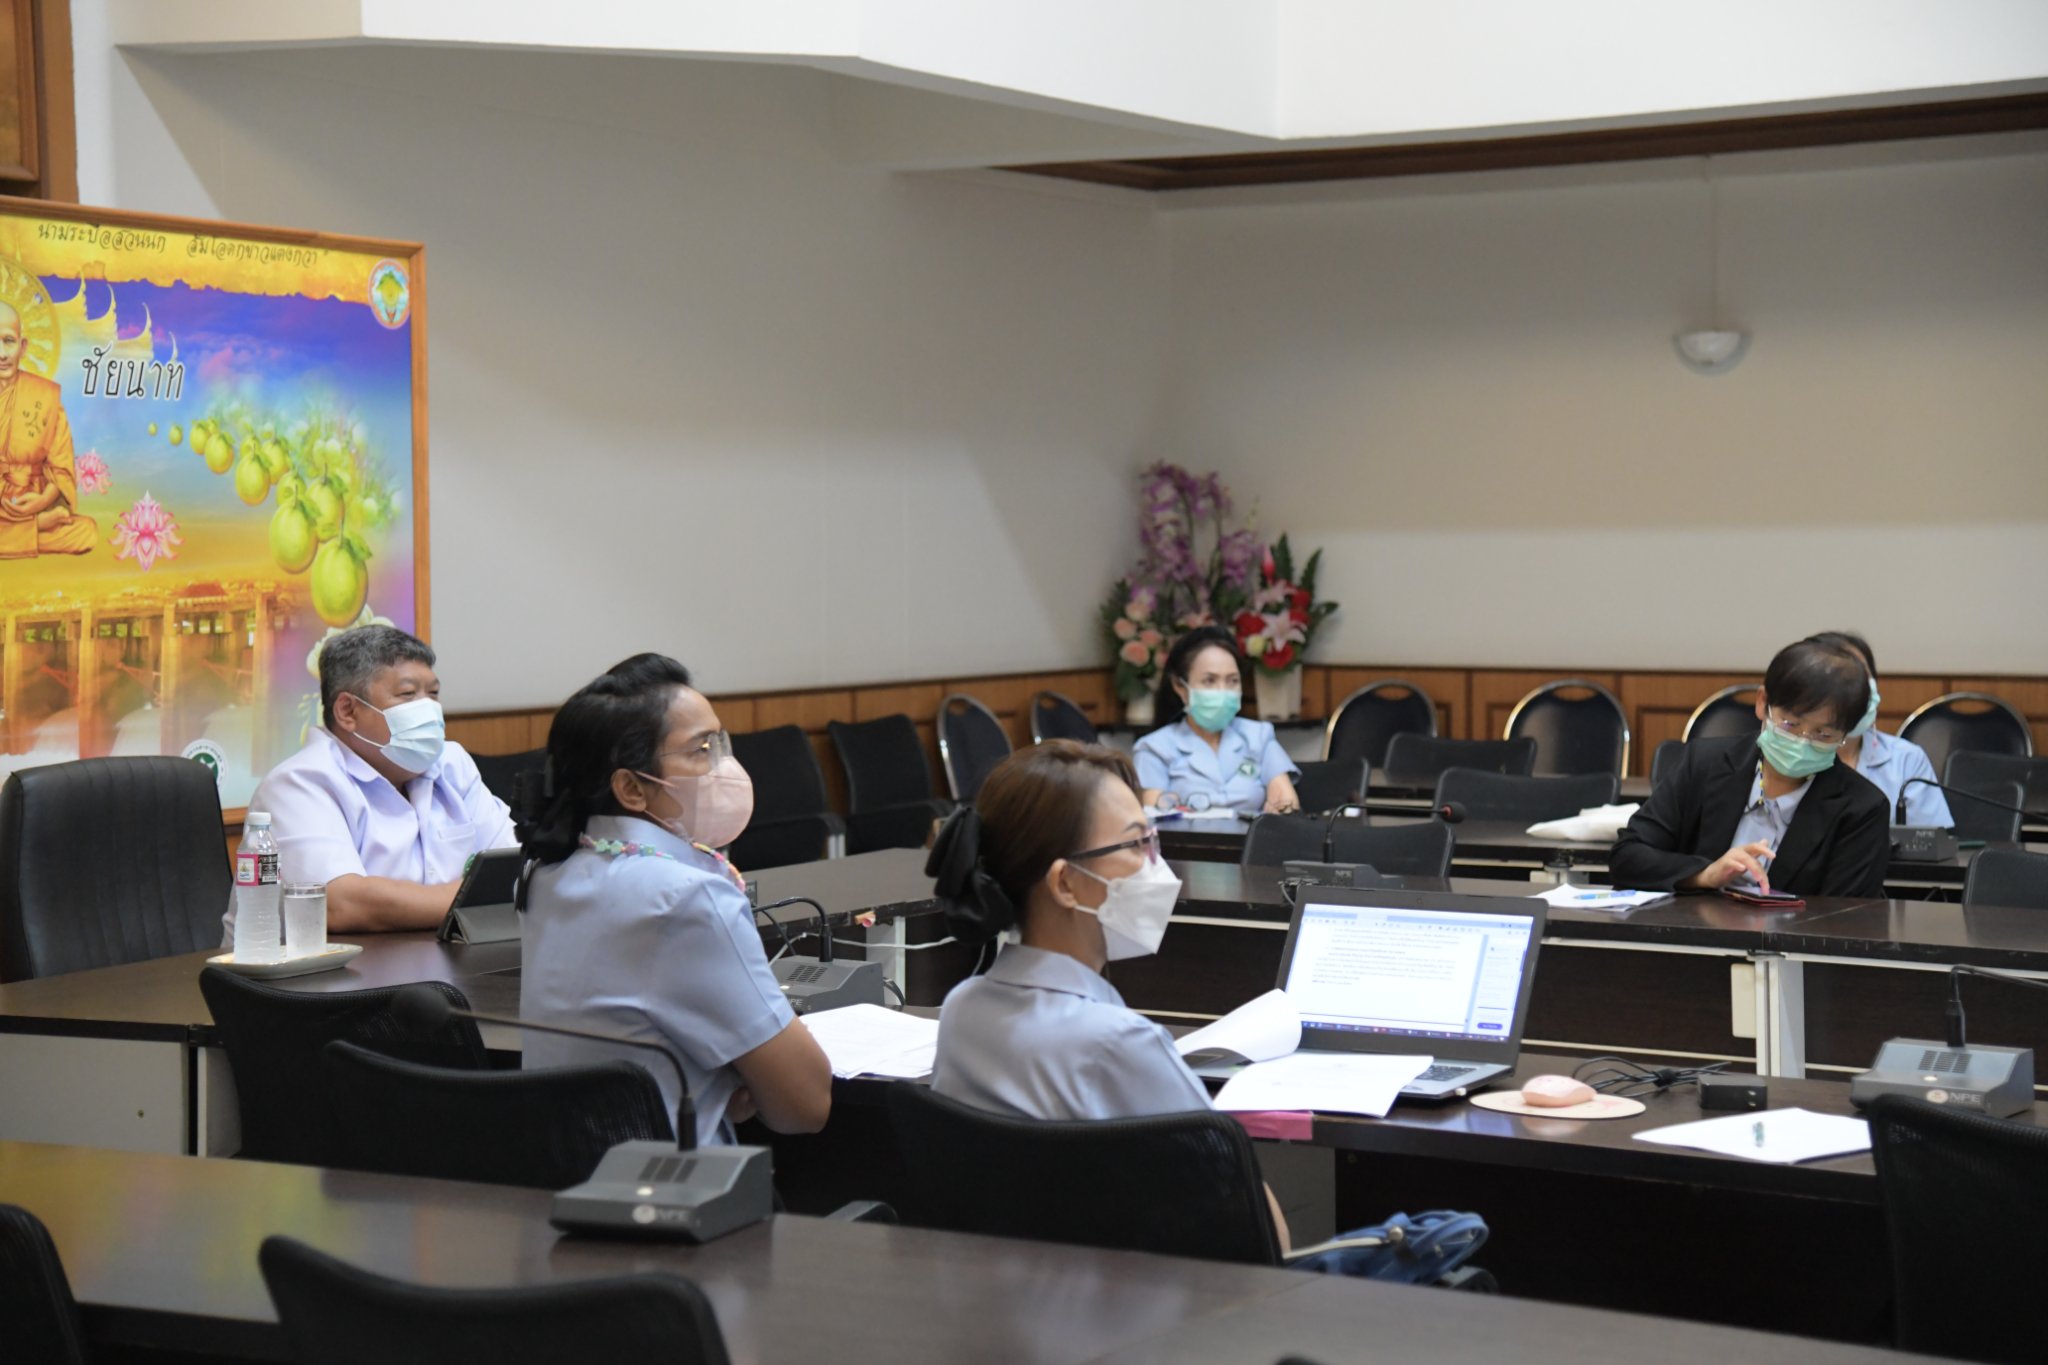 ร่วมการประชุม เตรียมจัดโครงการ แสงนำใจไทยทั้งชาติ เดิน วิ่ง ปั่น ป้องกันอัมพาต  ครั้งที่ 8 เฉลิมพระเกียรติ ครั้งที่ 3/2565 ผ่านระบบ Zoom Meeting